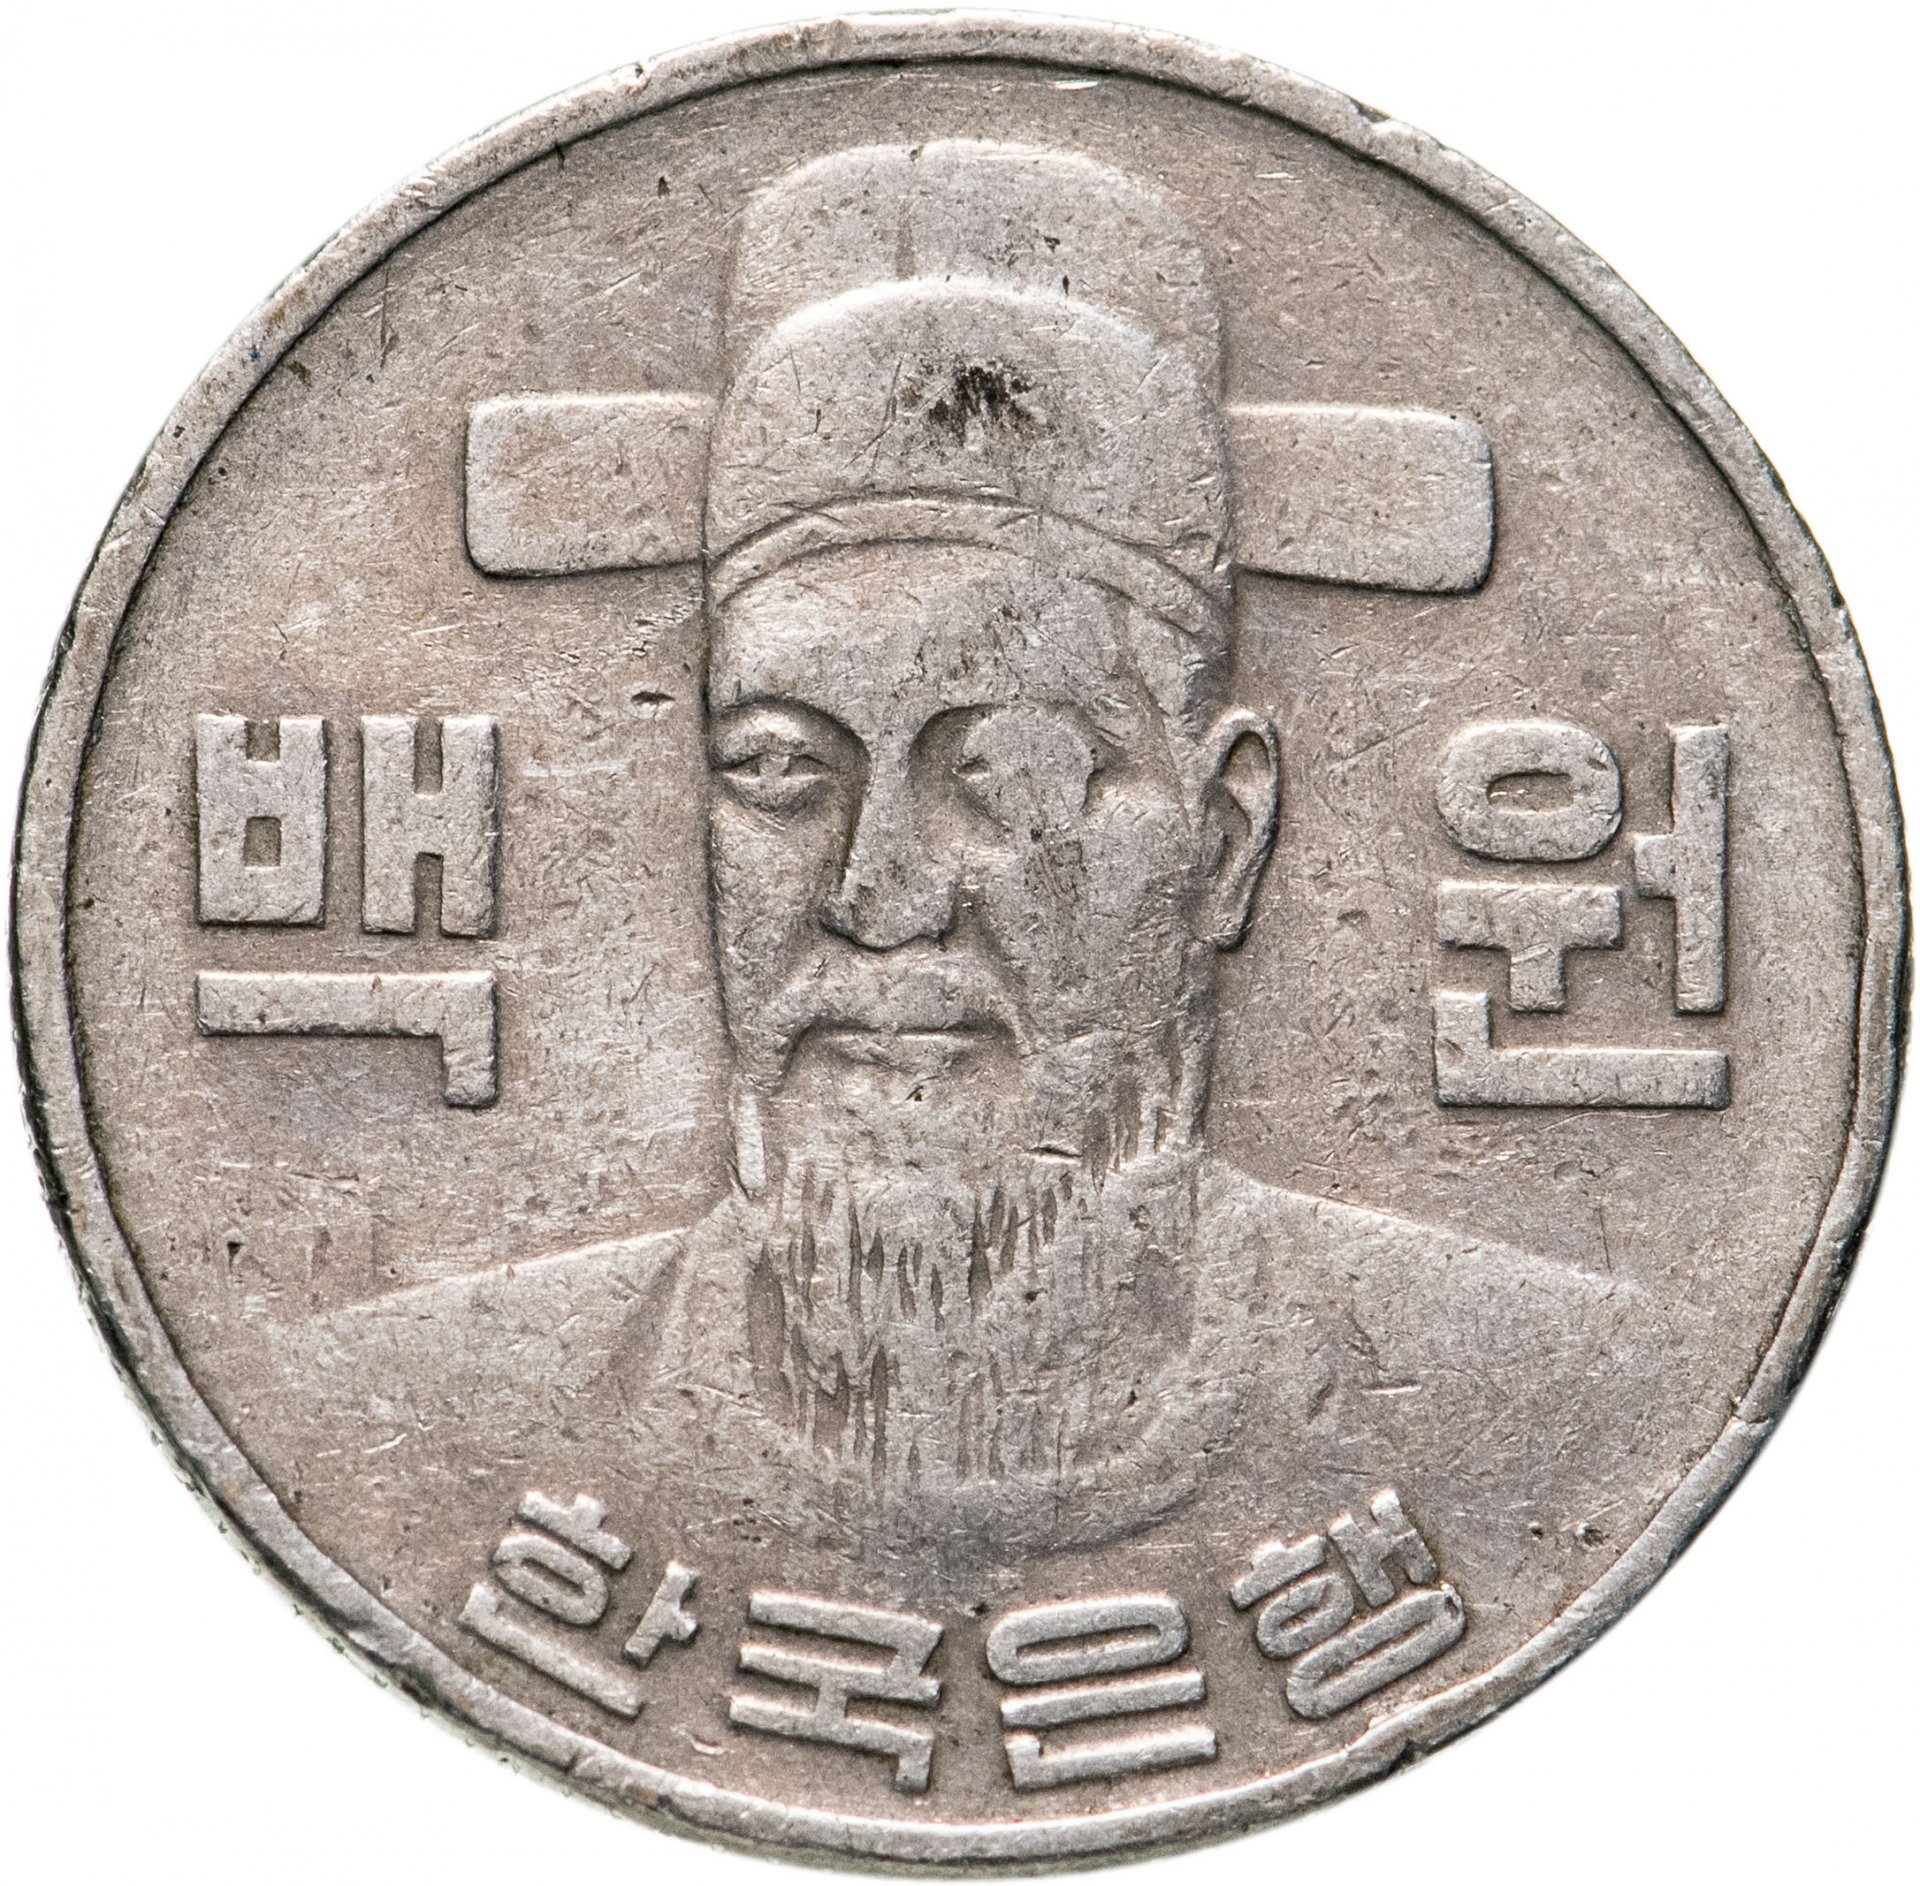 100 вон это сколько. Монета Южной Кореи 100 вон. Корейская монета номинал 100 вон. Монета Южной Кореи 100 вон 1996. Южная Корея 100 вон (иностранные монеты).